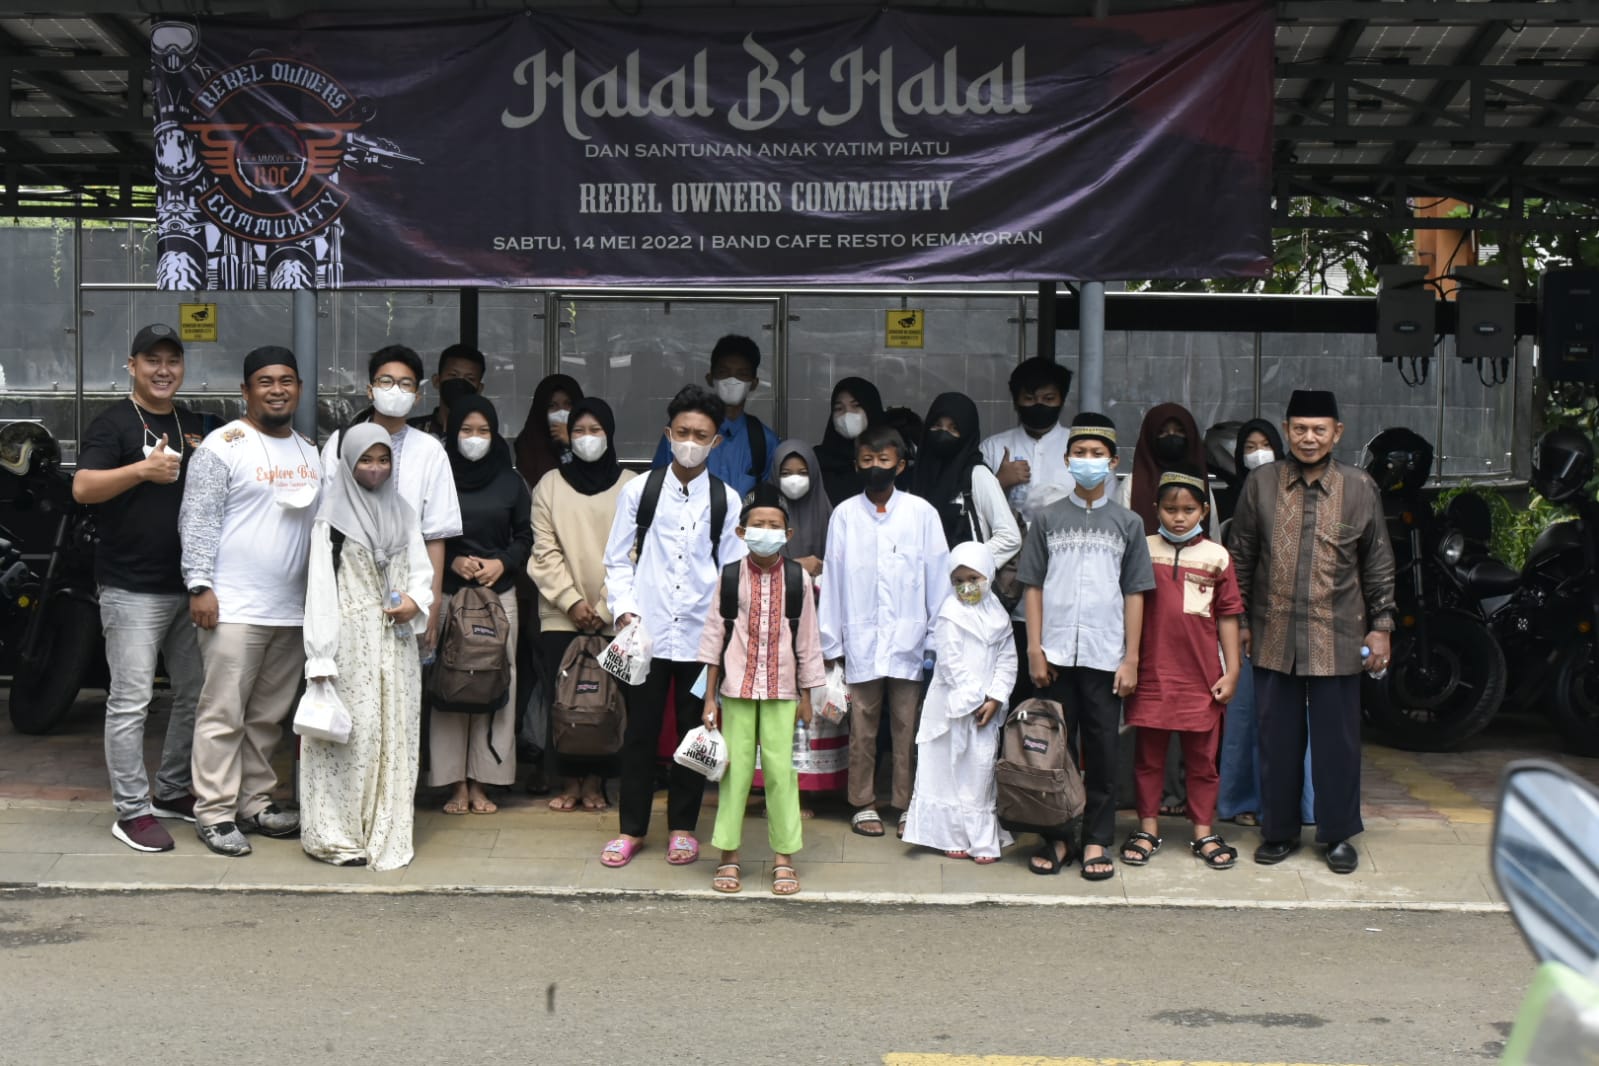 Masih Suasana Lebaran, Komunitas Rebel Owner Community Gelar Halal Bihalal Sekaligus Santunan Anak Yatim